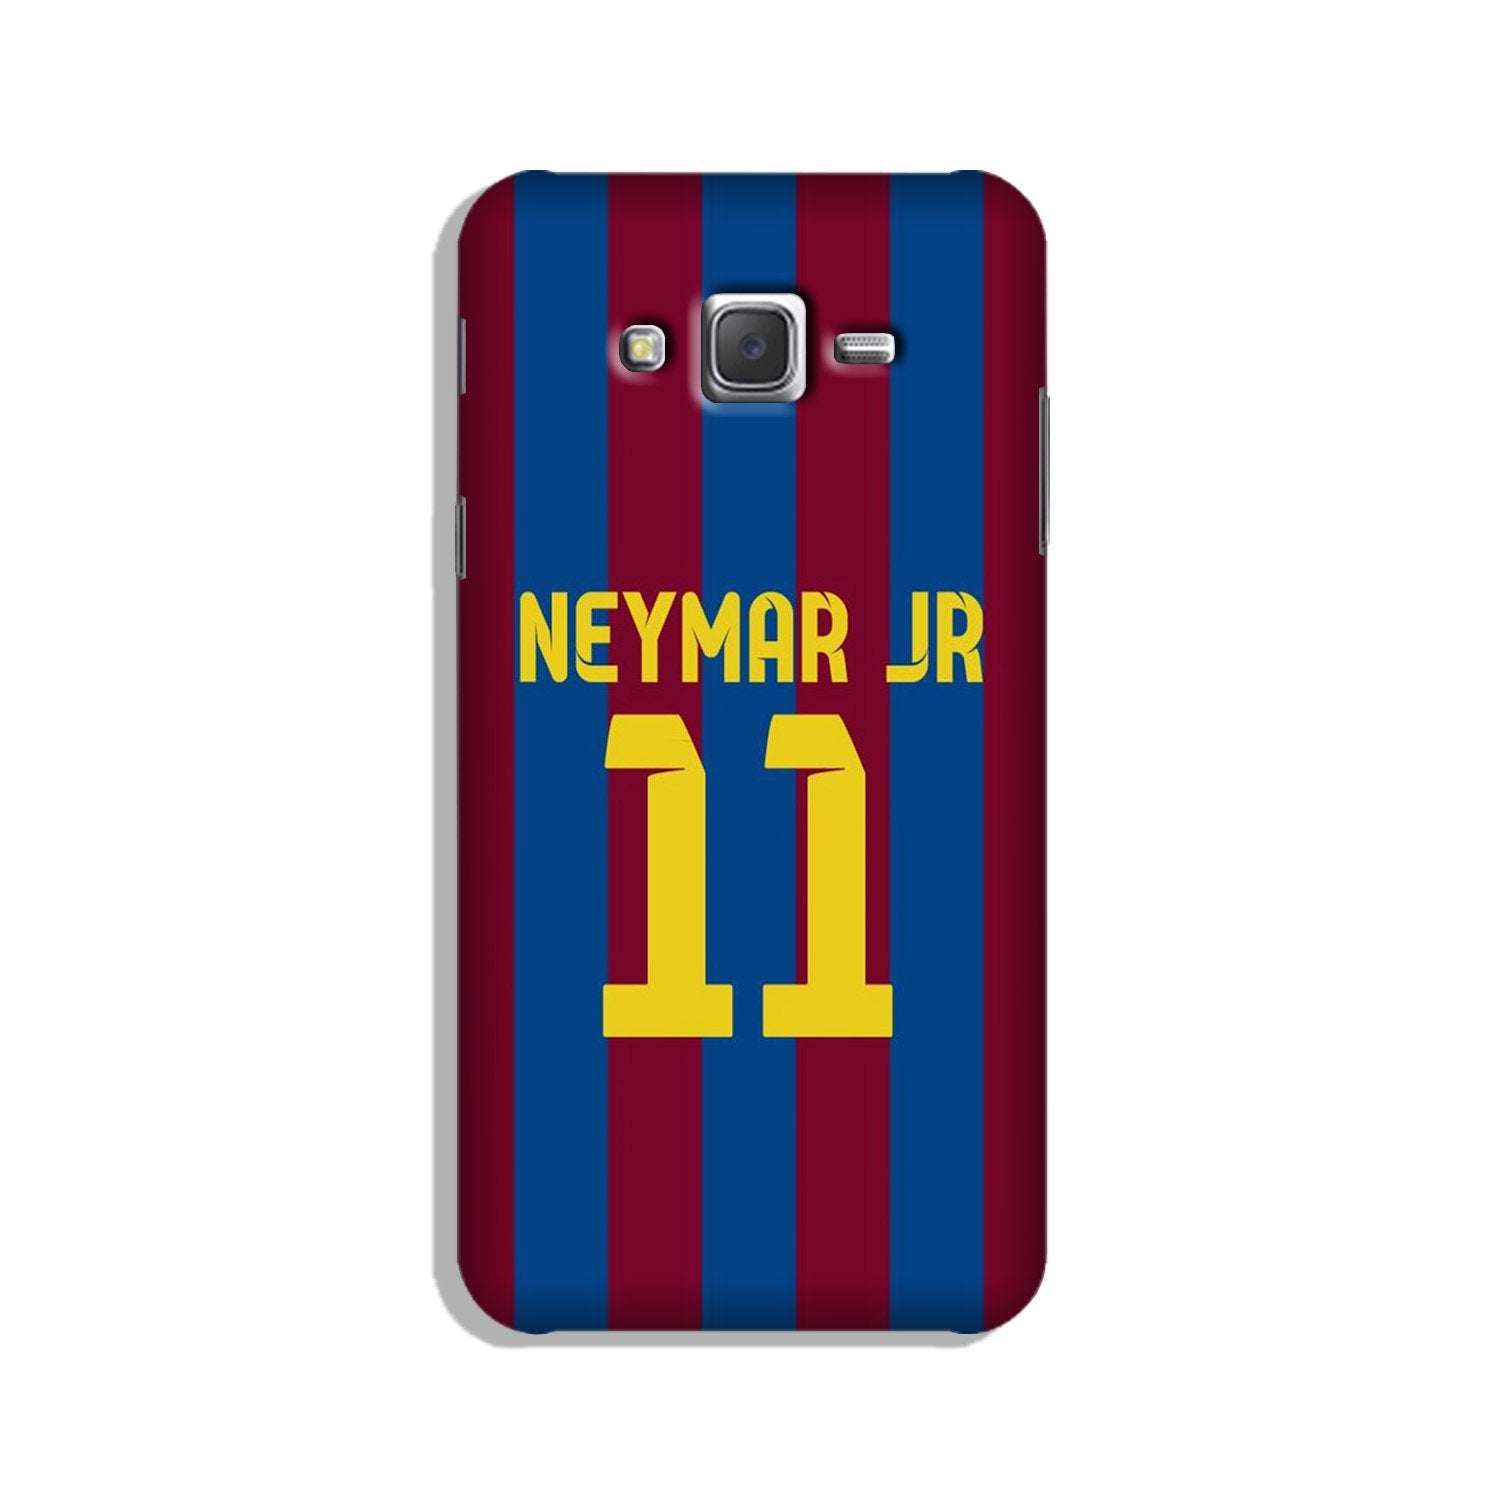 Neymar Jr Case for Galaxy J5 (2015)  (Design - 162)